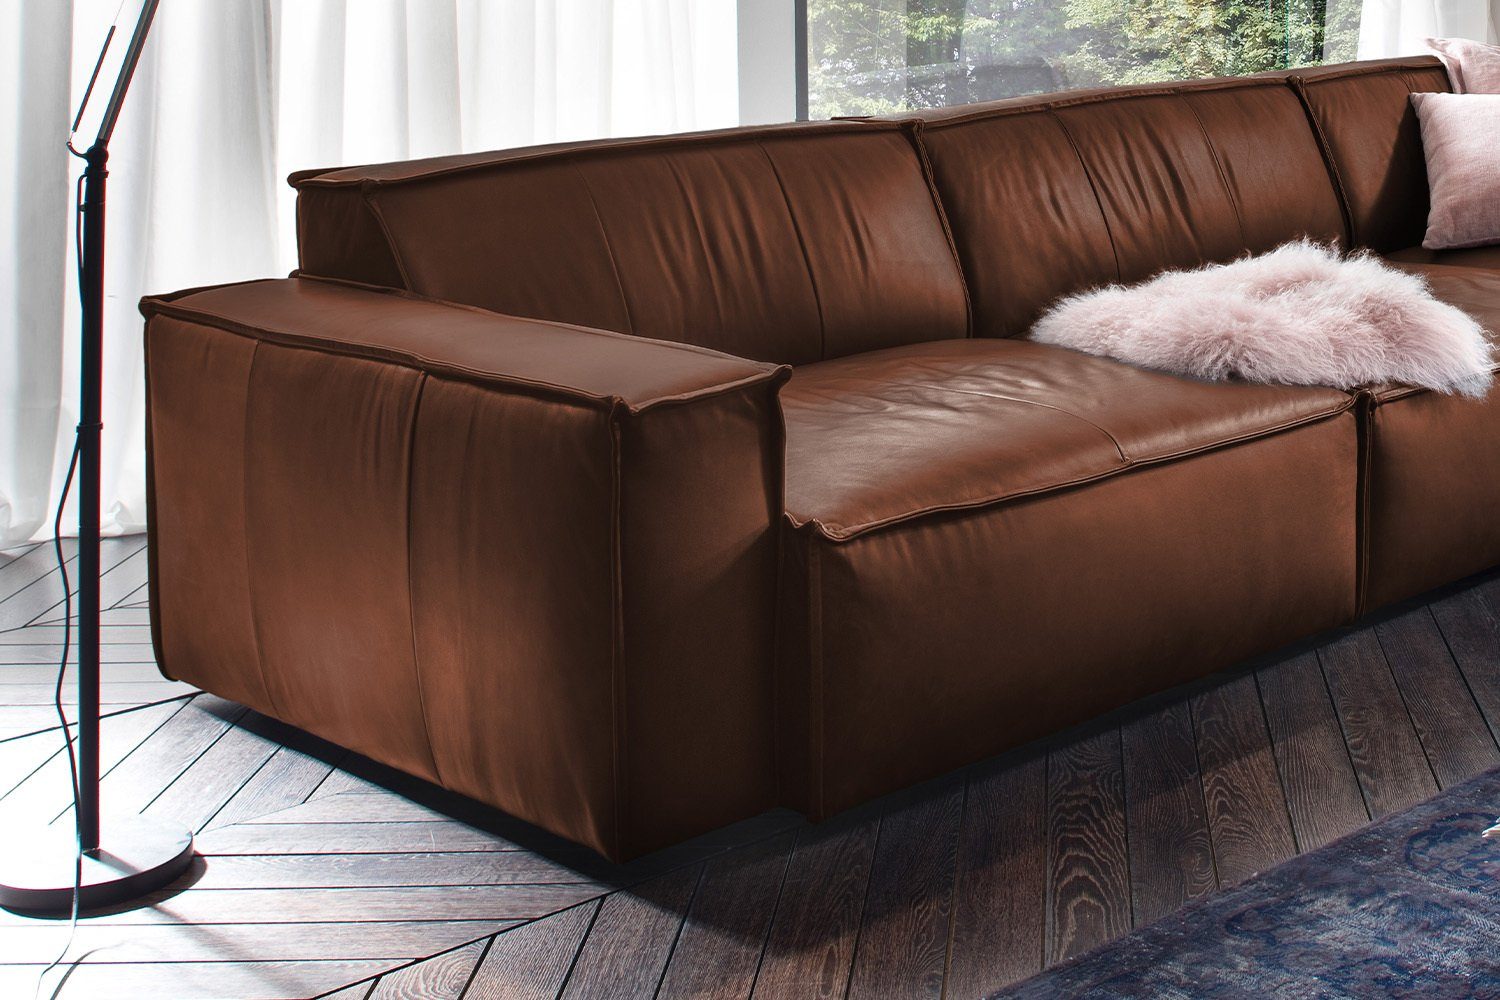 KAWOLA Sofa verschiedene Farben braun SAMU, Leder Riesensofa